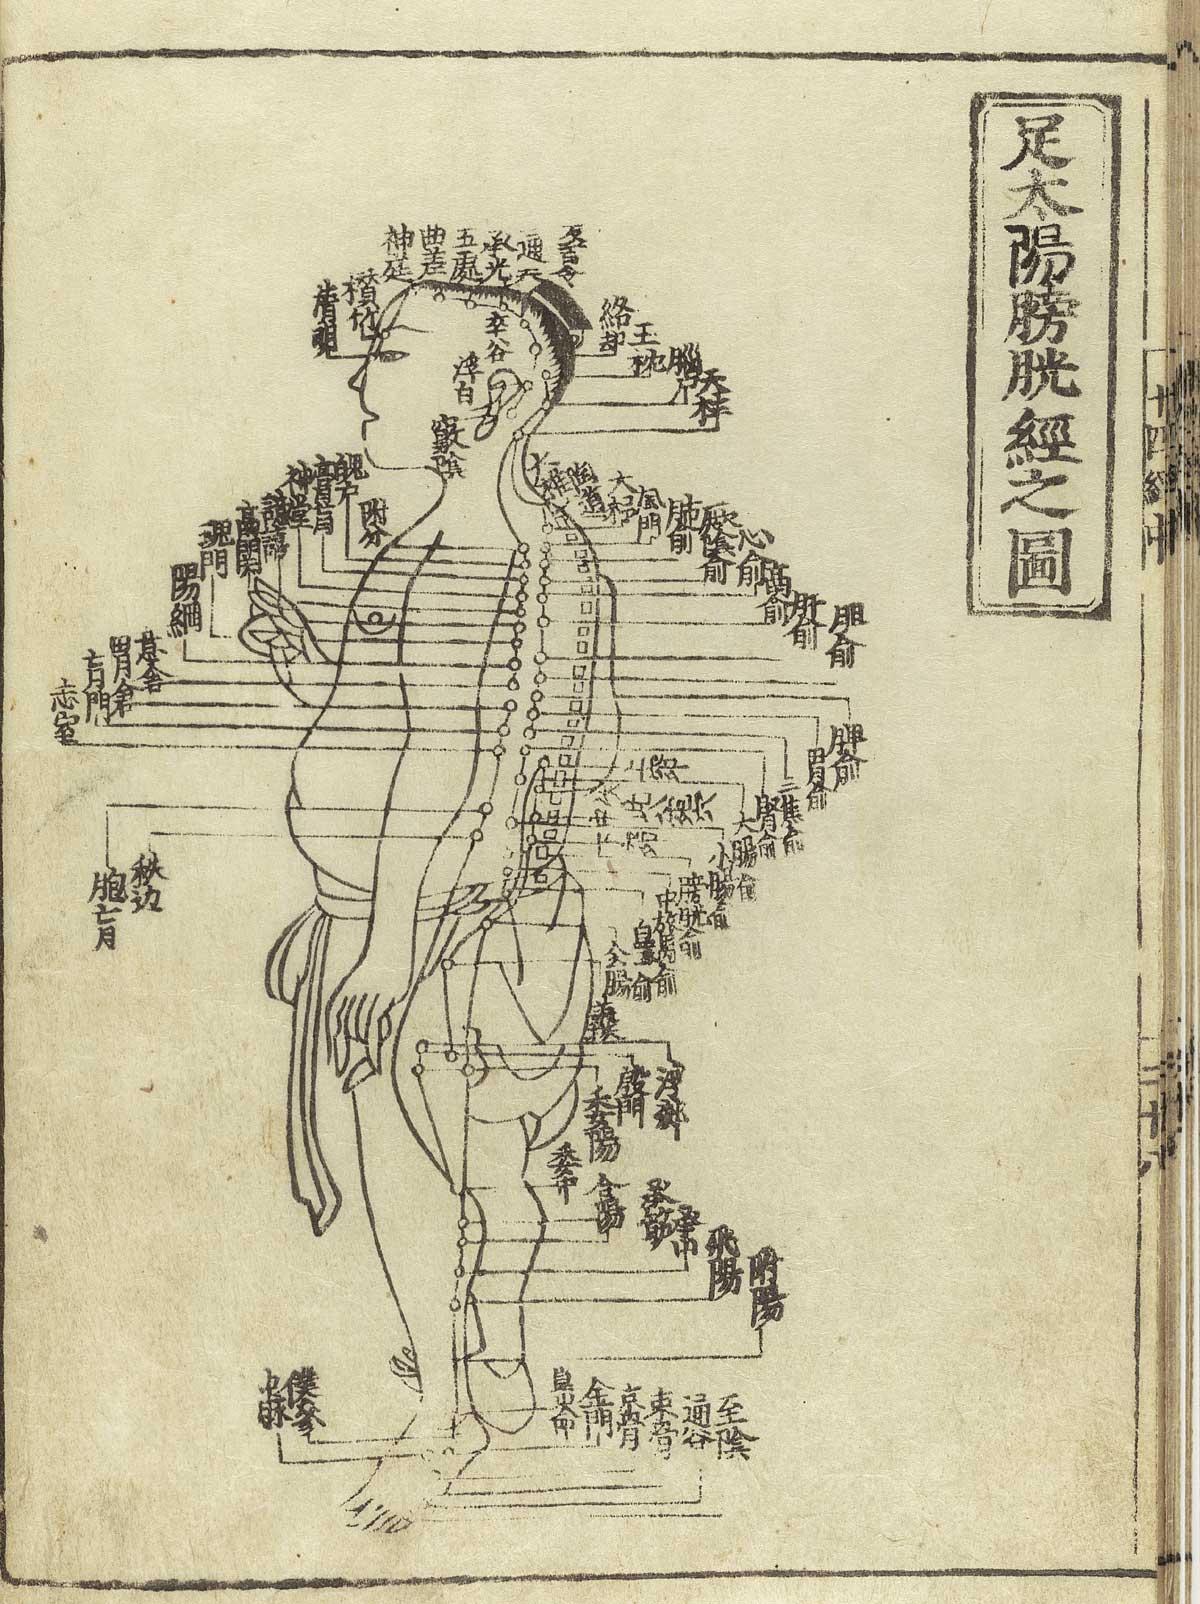 Desenho em preto e branco de um diagrama de acupuntura. Há uma pessoa de lado e os pontos principais do corpo destacados com traços e escritas em chinês.